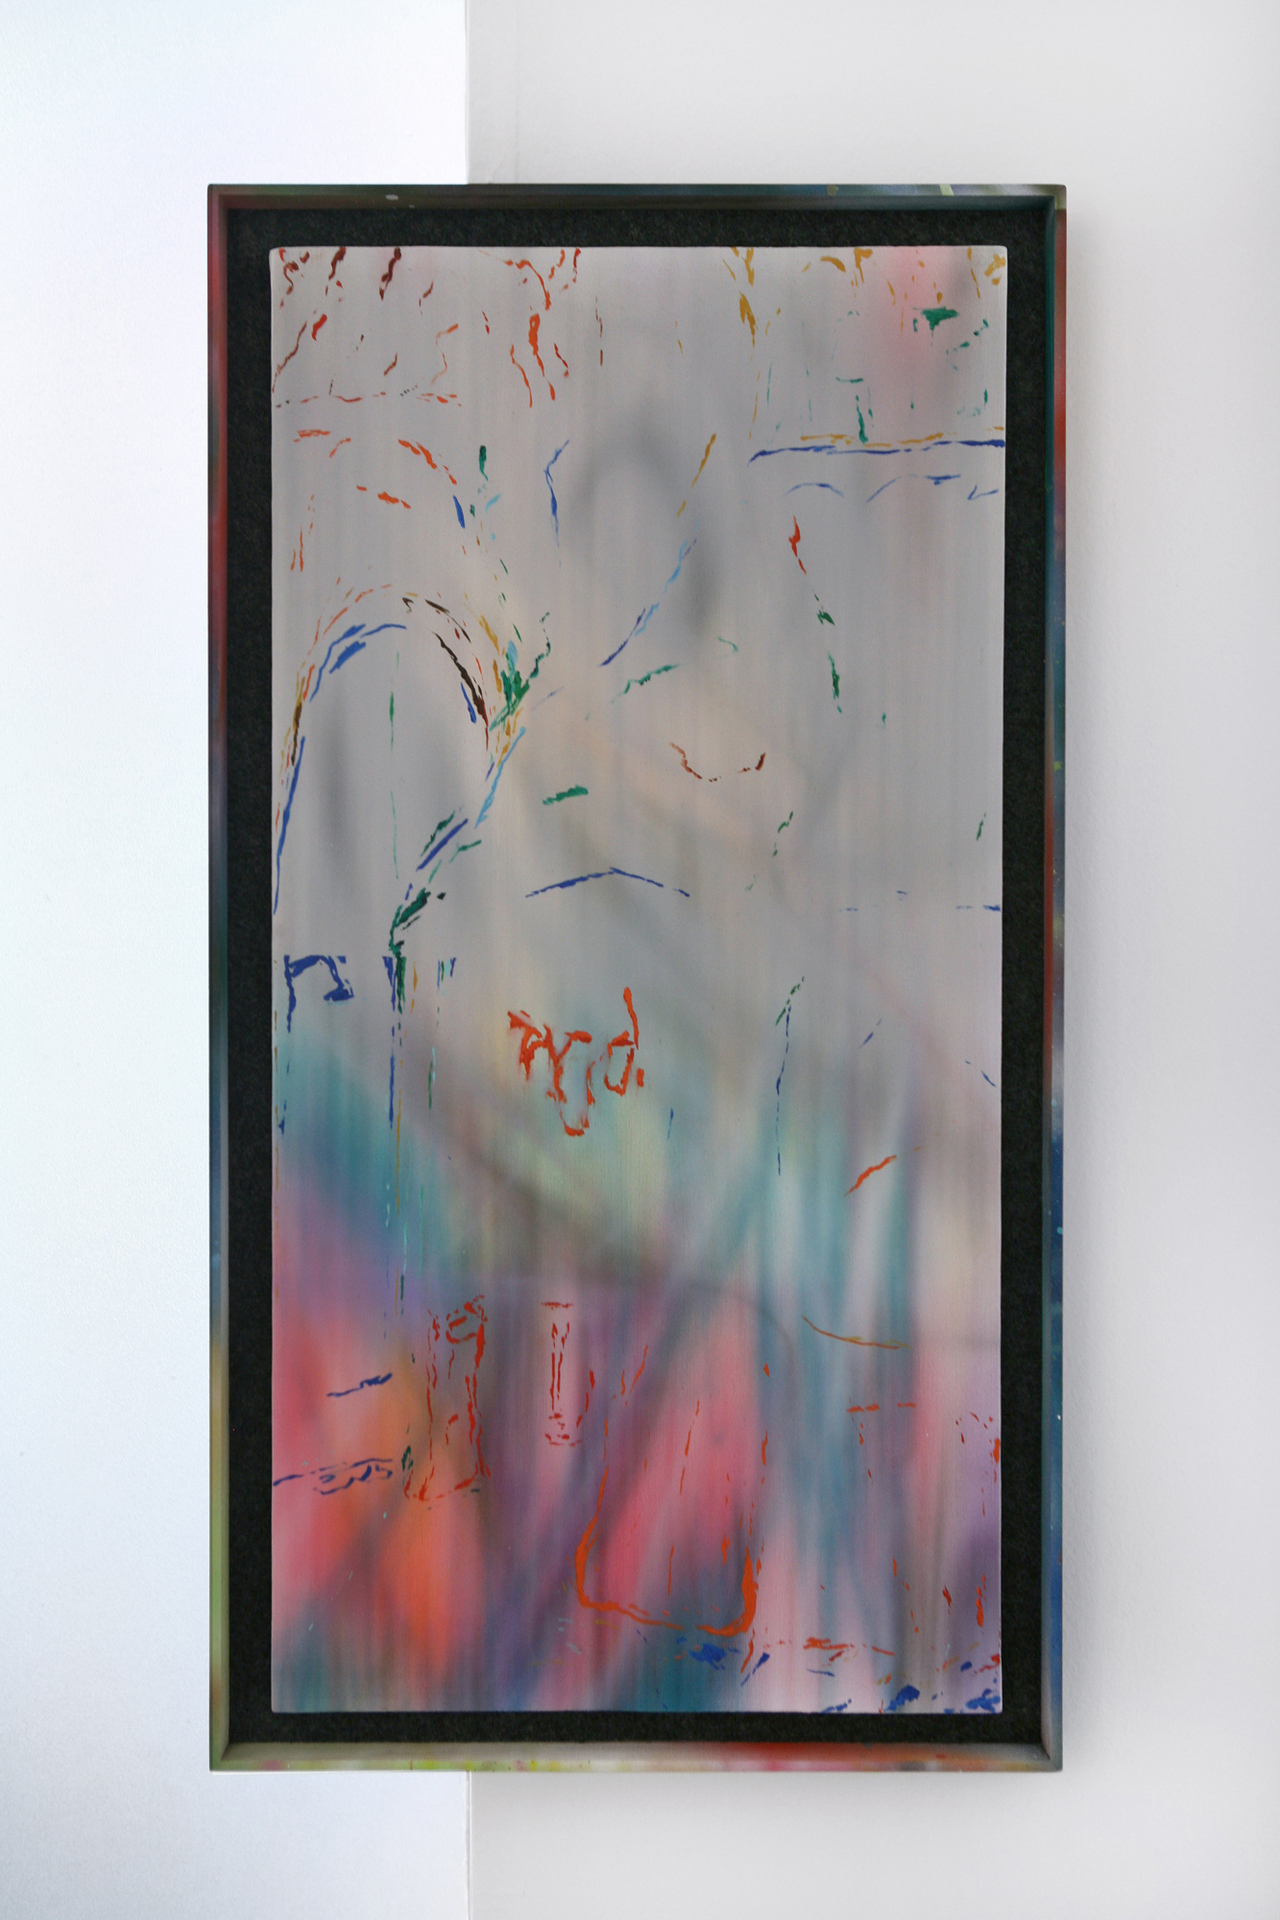 Jason Burgess, Strip Mall / Torrance, 2021, Oil and acrylic on canvas in pine, felt, and acrylic frame, 66 x 36 cm